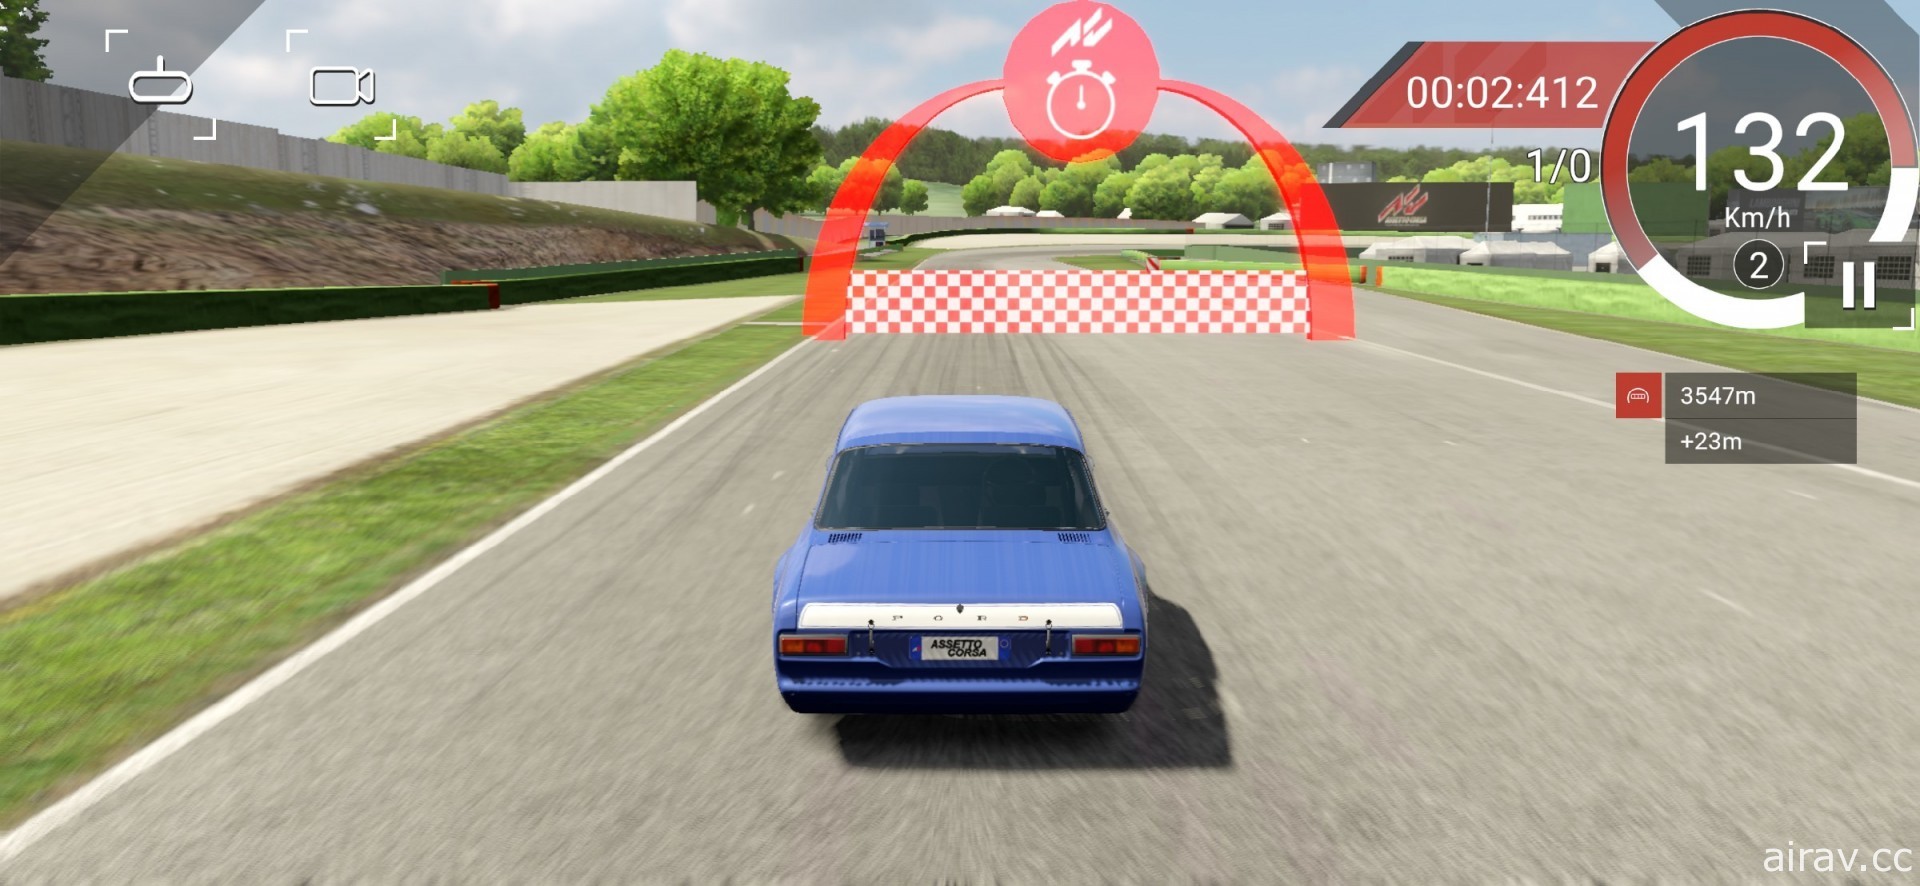 赛车模拟游戏《出赛准备》行动版正式登上 App Store 随时随地享受竞速乐趣